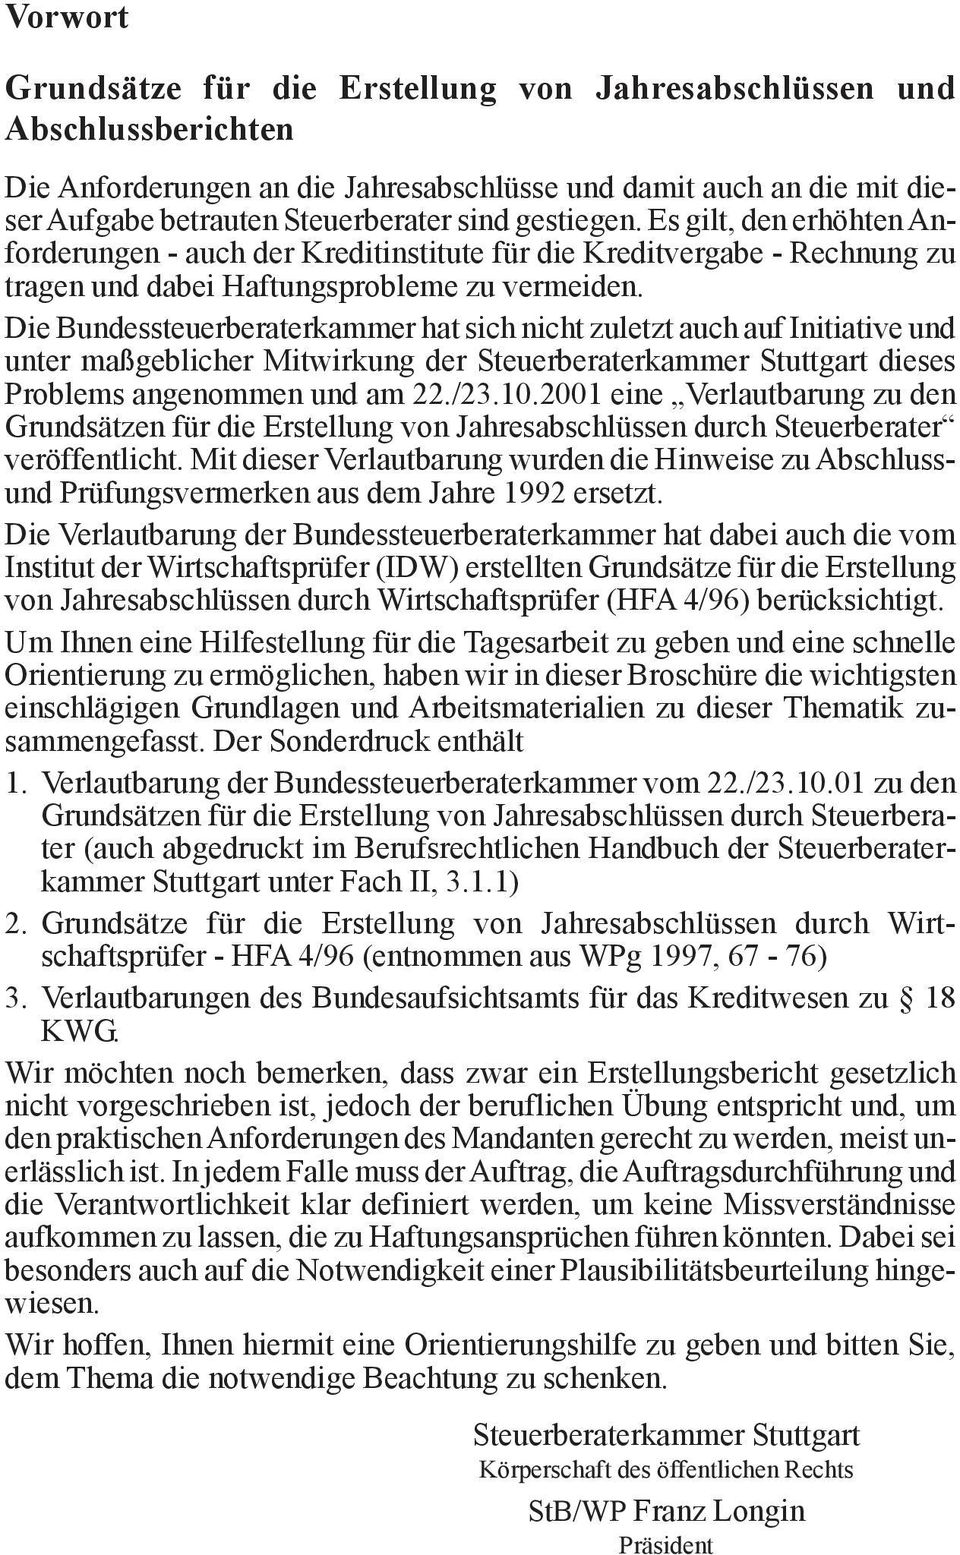 Die Bundessteuerberaterkammer hat sich nicht zuletzt auch auf Initiative und unter maßgeblicher Mitwirkung der Steuerberaterkammer Stuttgart dieses Problems angenommen und am 22./23.10.